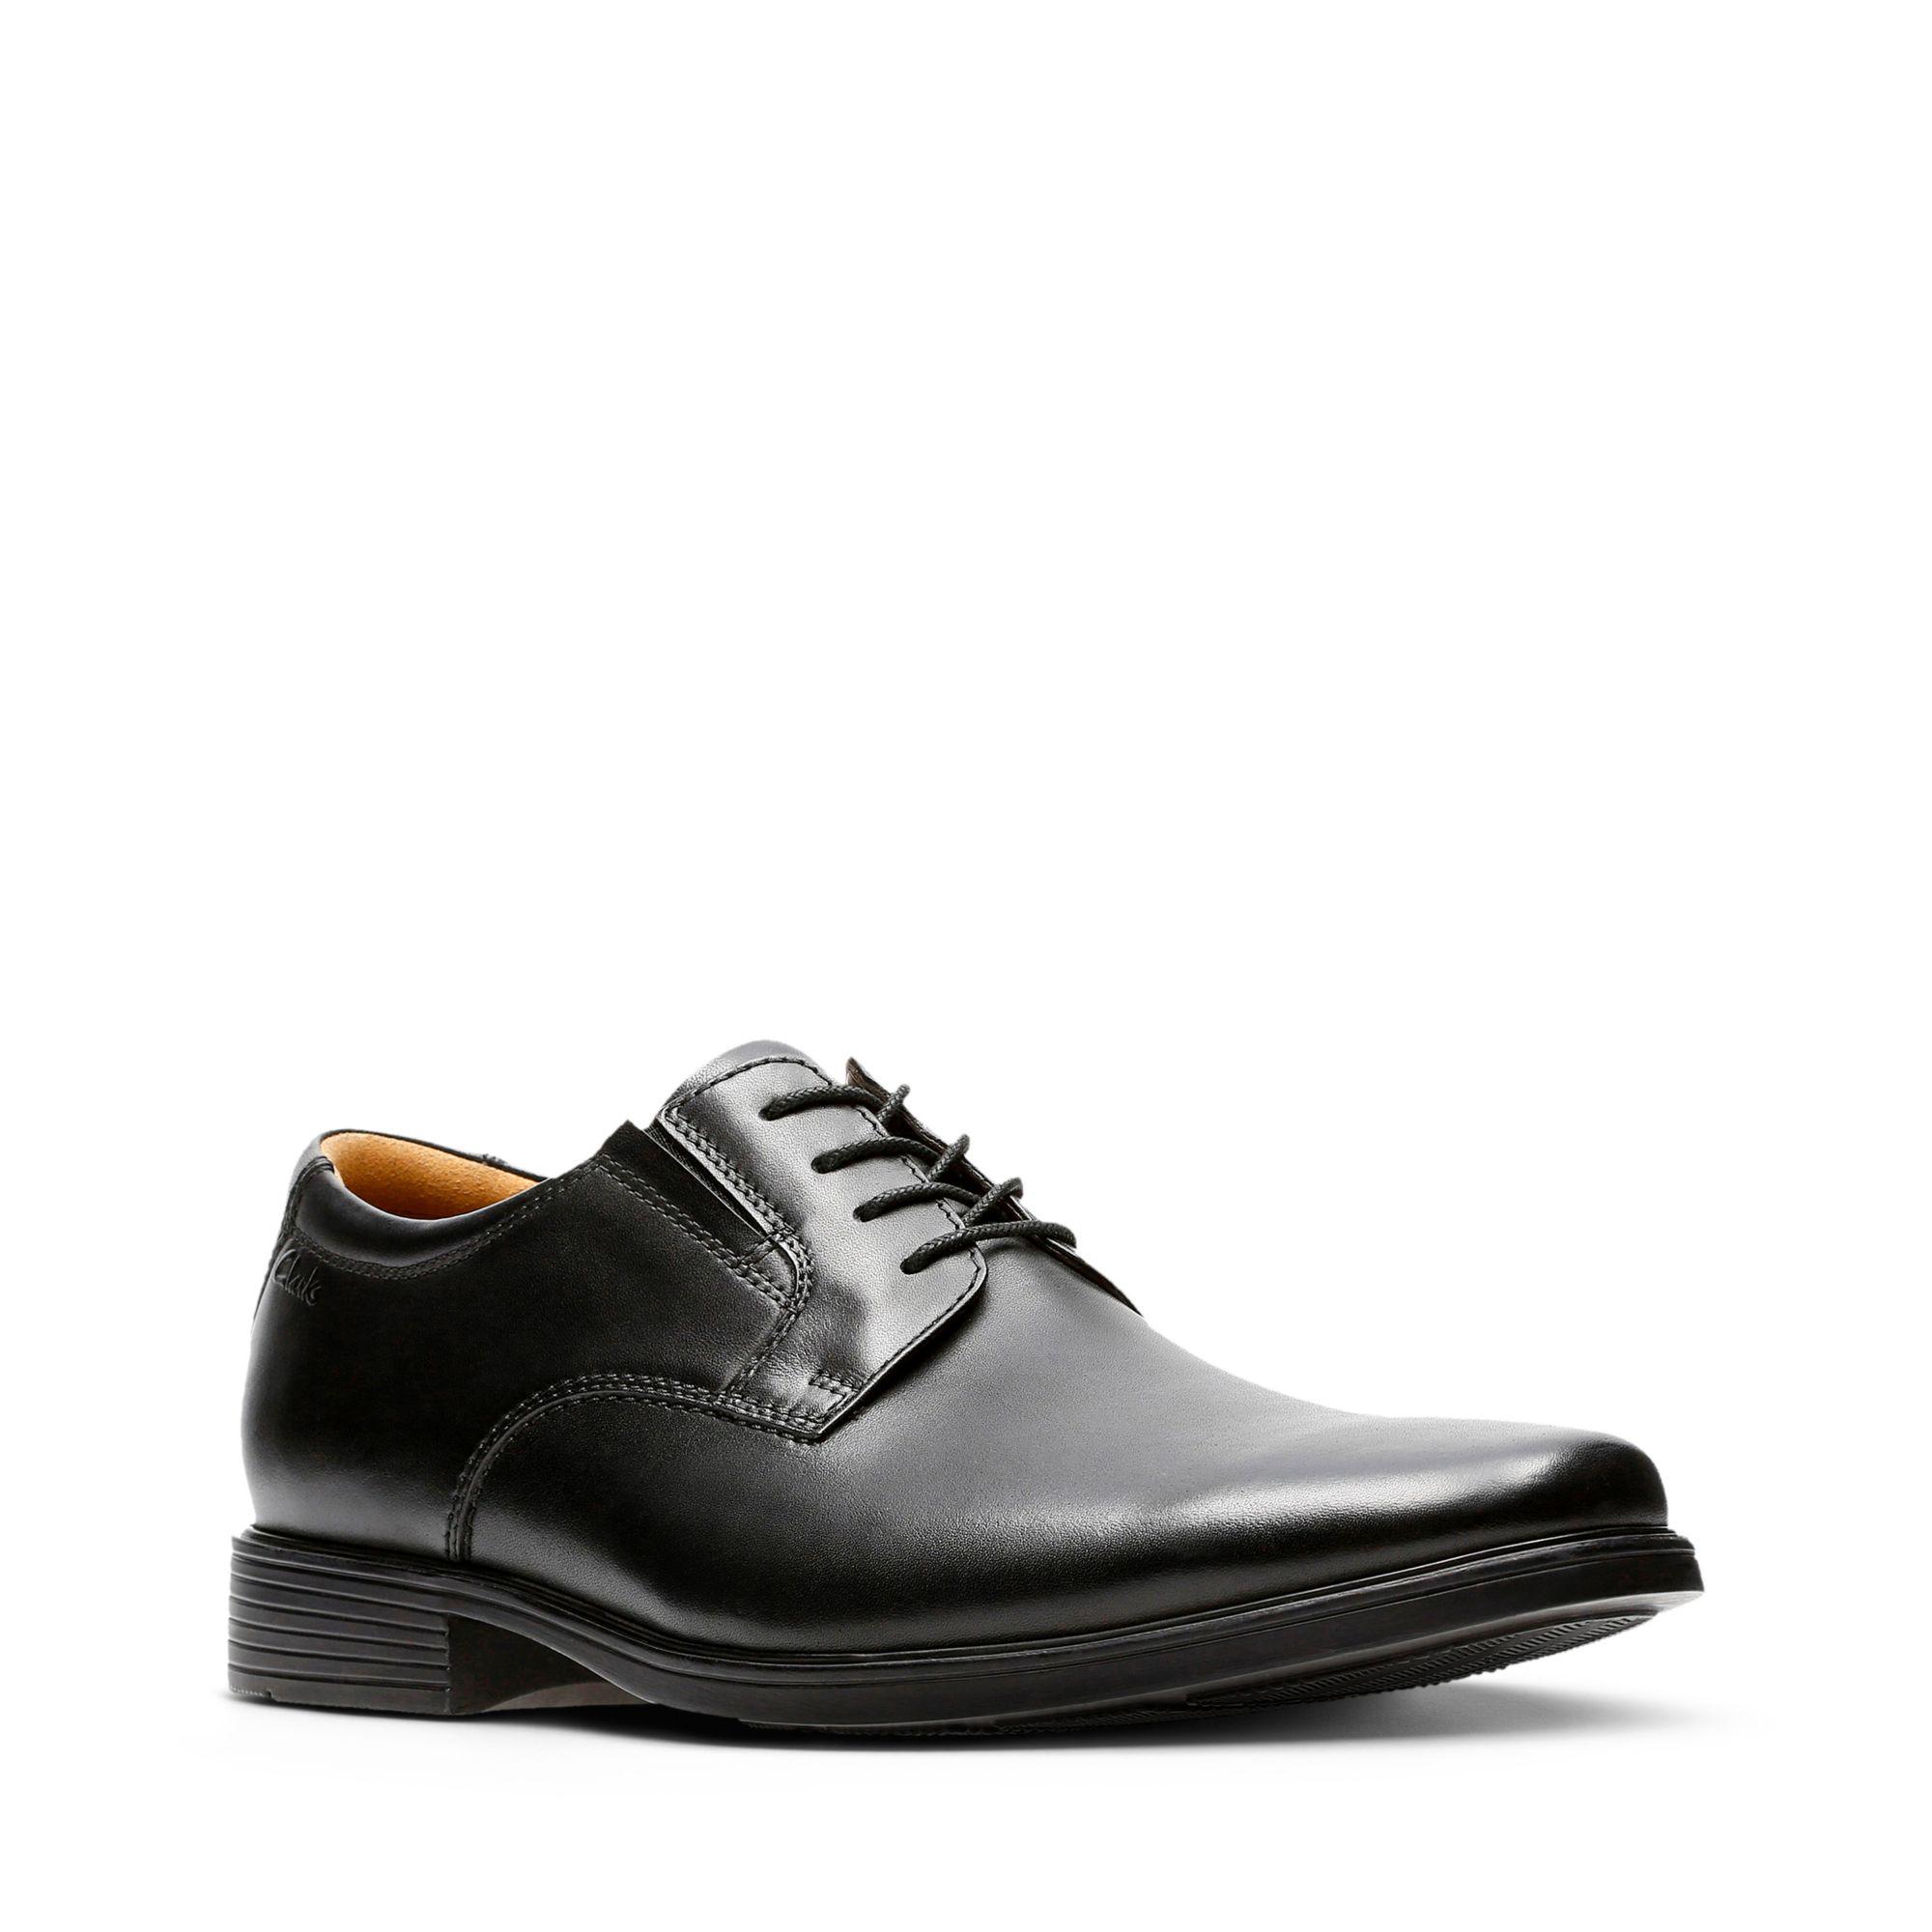 Clarks Leather Tilden Cap Oxford Shoe in Black Leather (Black) for Men ...